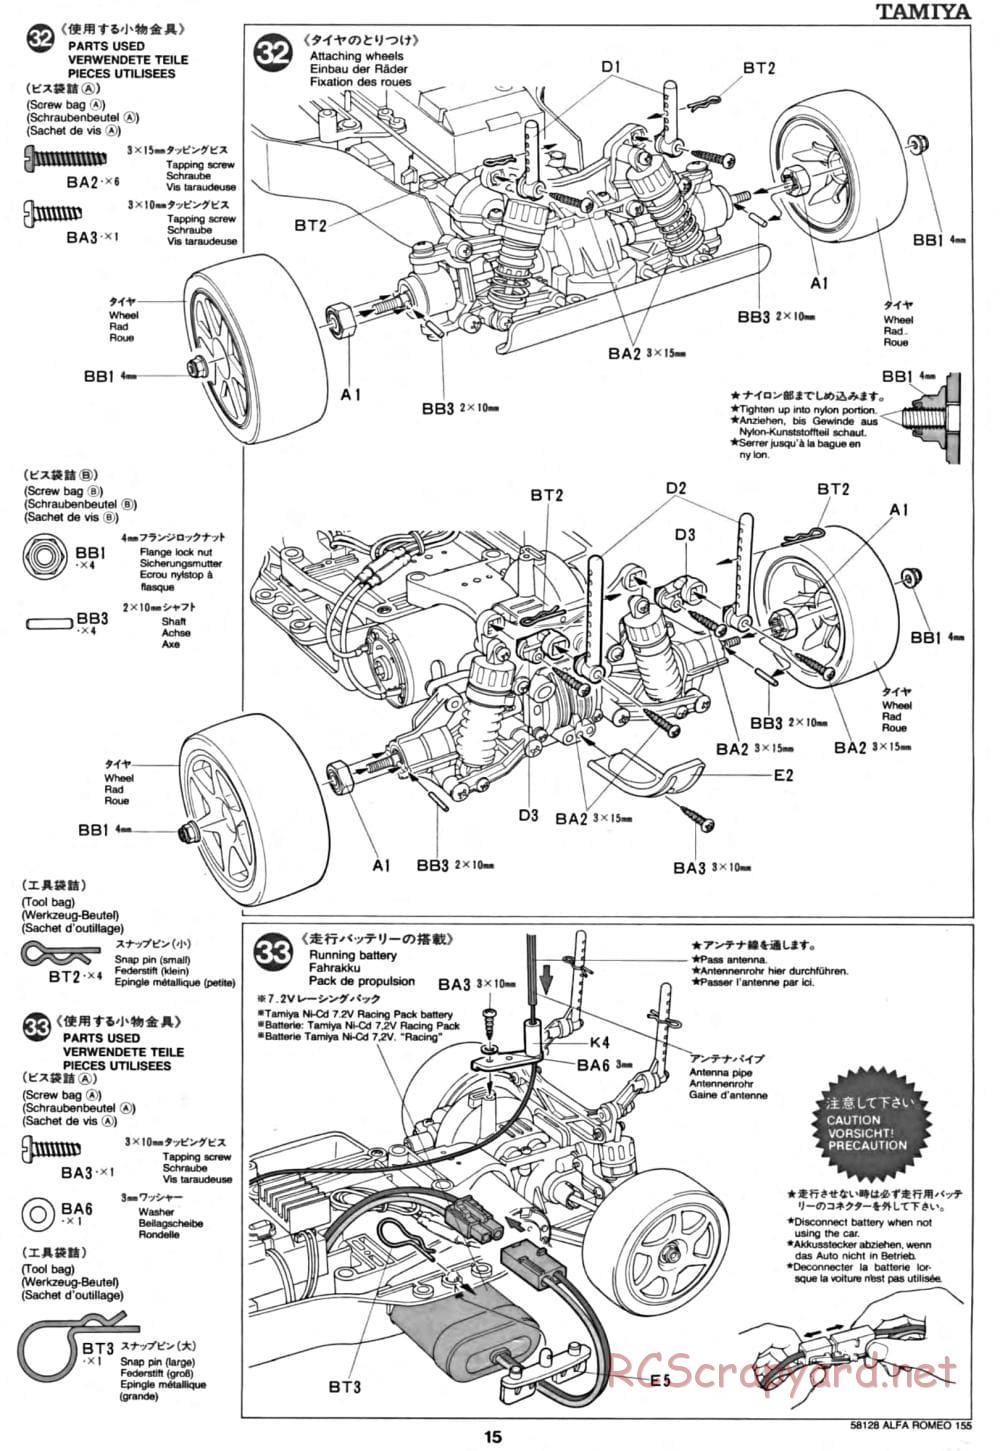 Tamiya - Alfa Romeo 155 V6 TI - TA-02 Chassis - Manual - Page 15